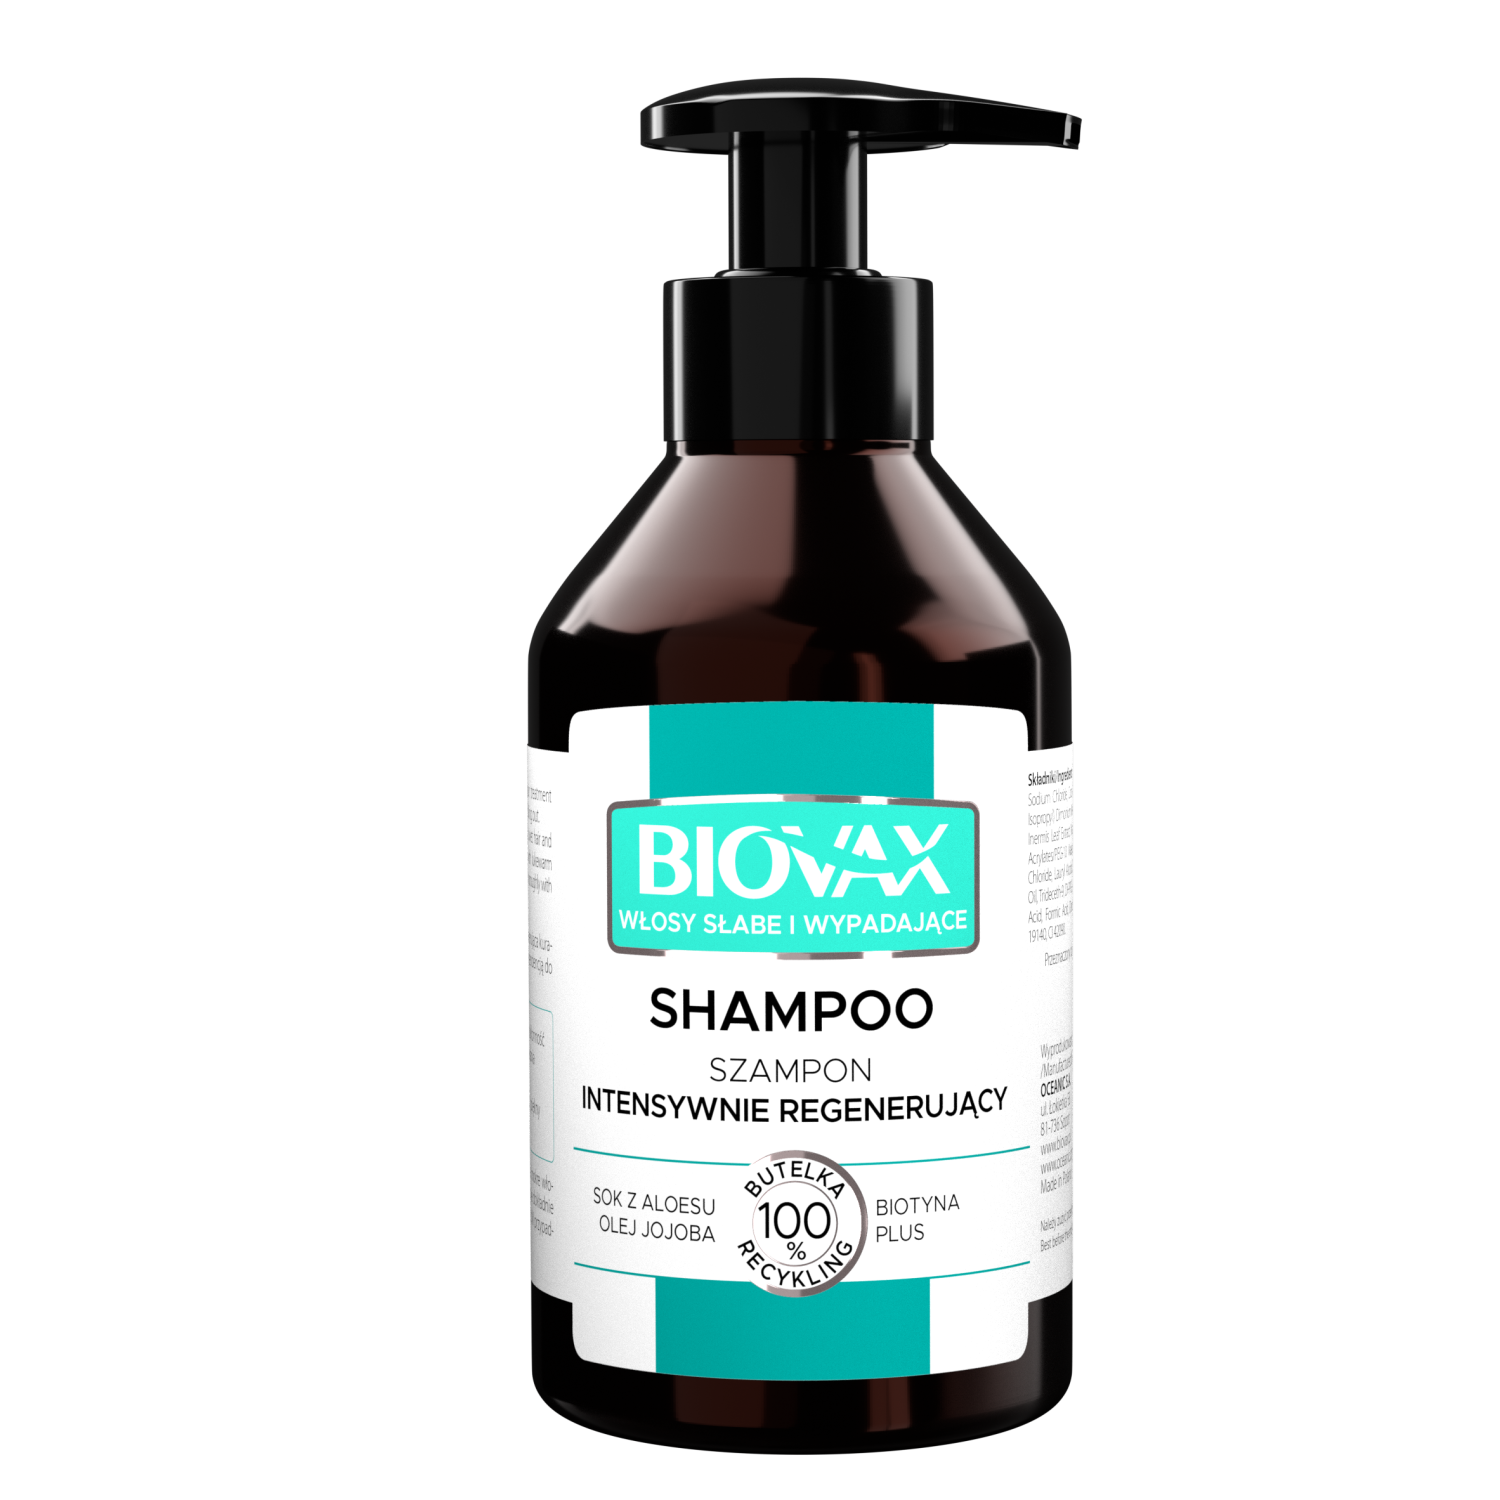 Biovax Biovax интенсивно регенерирующий шампунь для ослабленных волос, склонных к выпадению, 200 мл